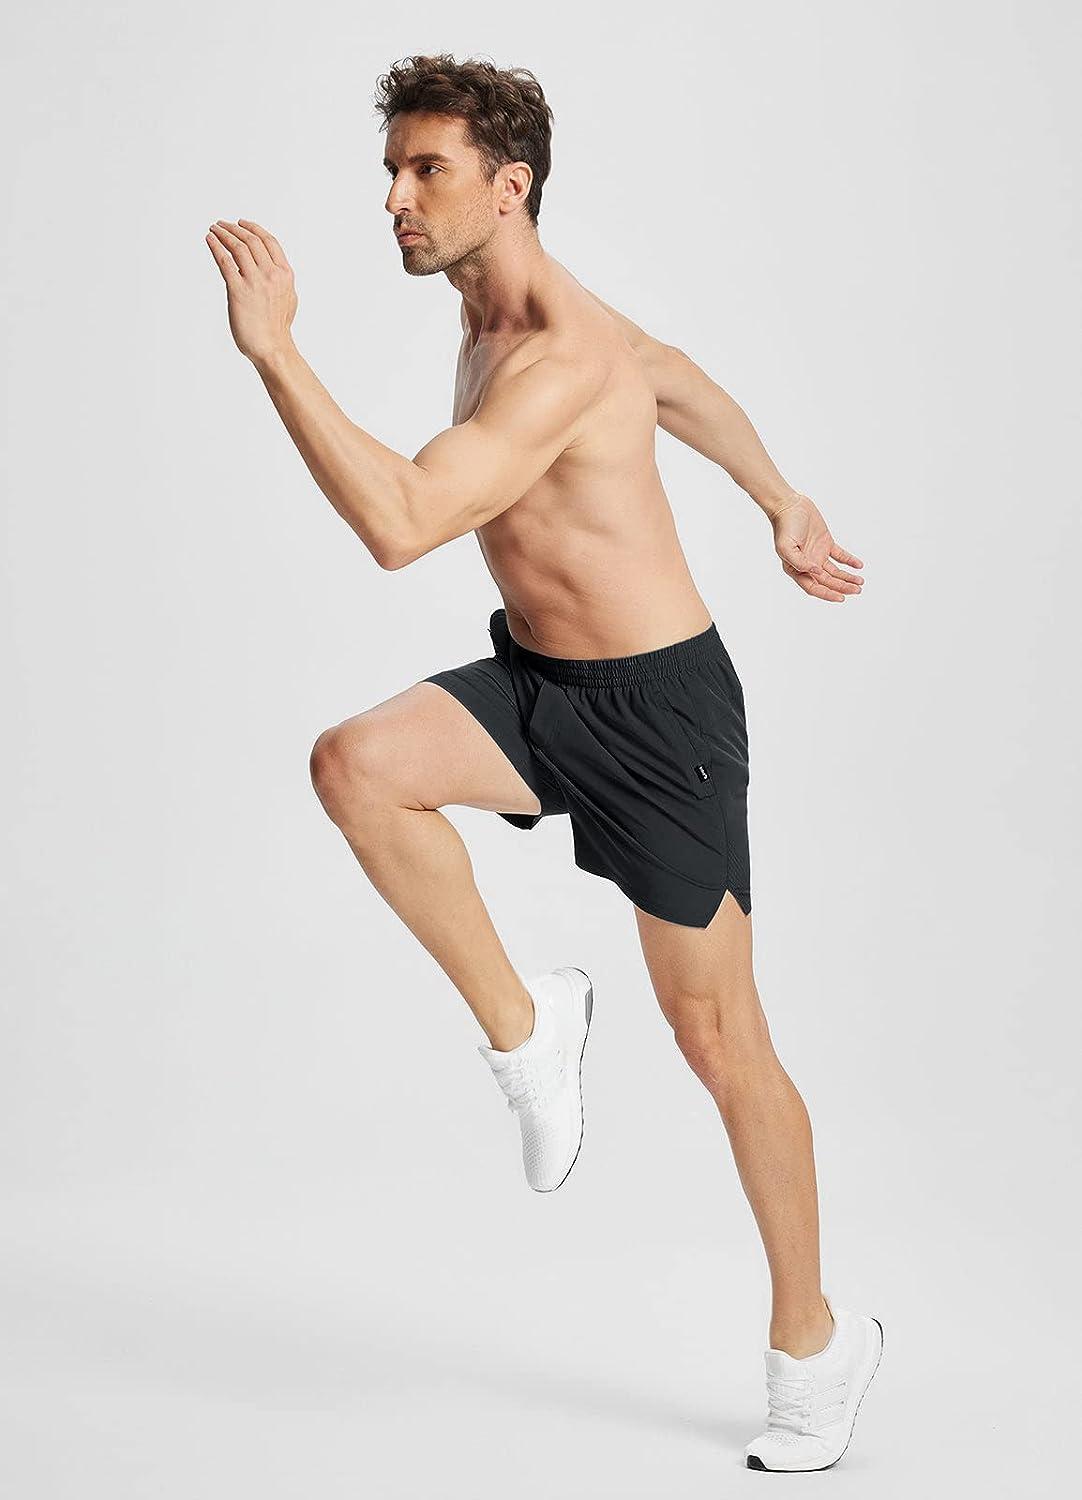 BALEAF Men's 5'' Running Shorts Quick Dry Lightweight Unlined 2 Zipper  Pockets Workout Gym Black Medium